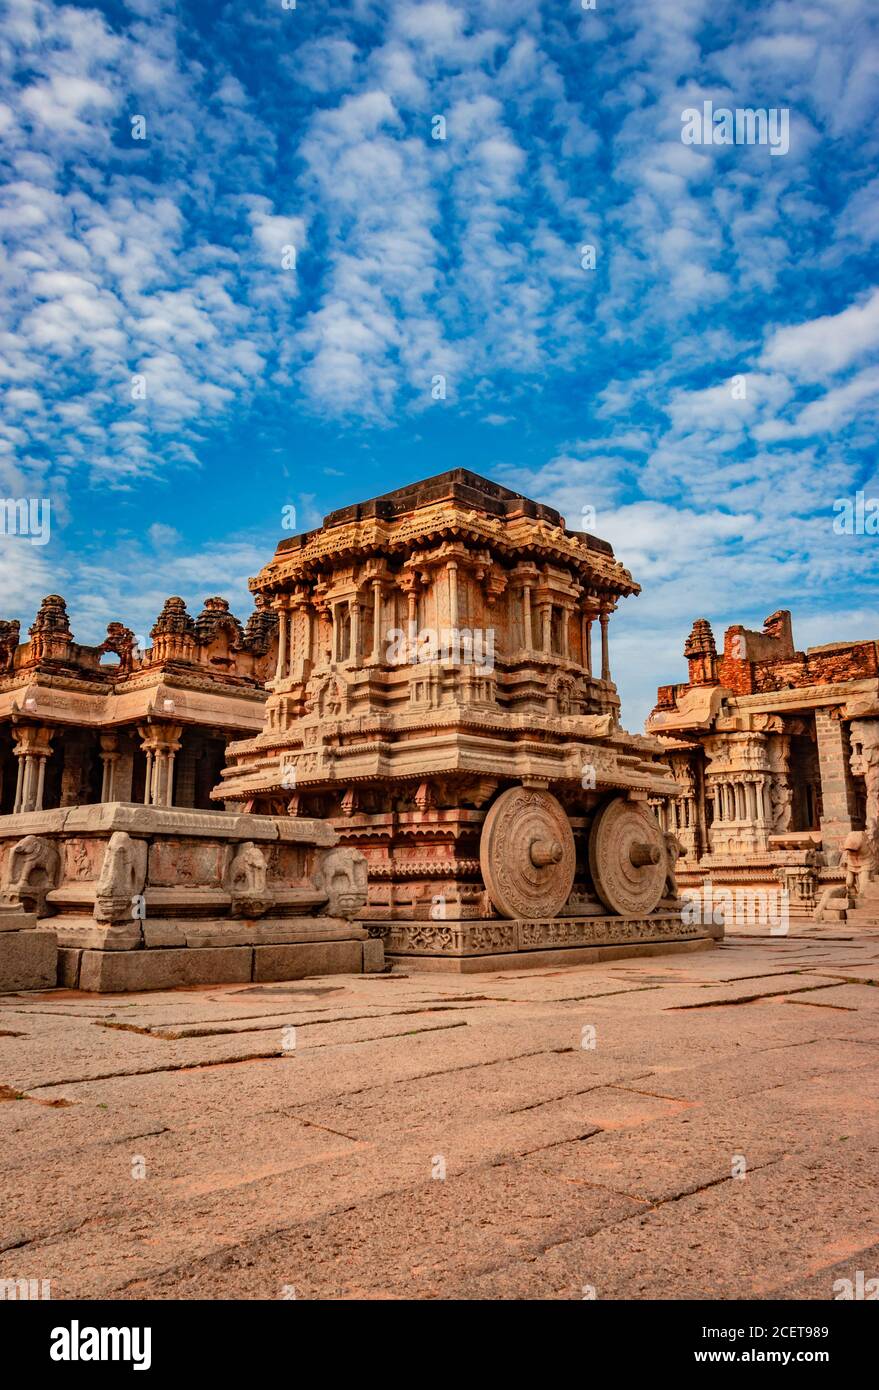 char en pierre de hampi la pièce d'art en pierre antique d'un angle unique avec une incroyable image de ciel bleu est prise à hampi karnataka inde. c'est le plus impres Banque D'Images